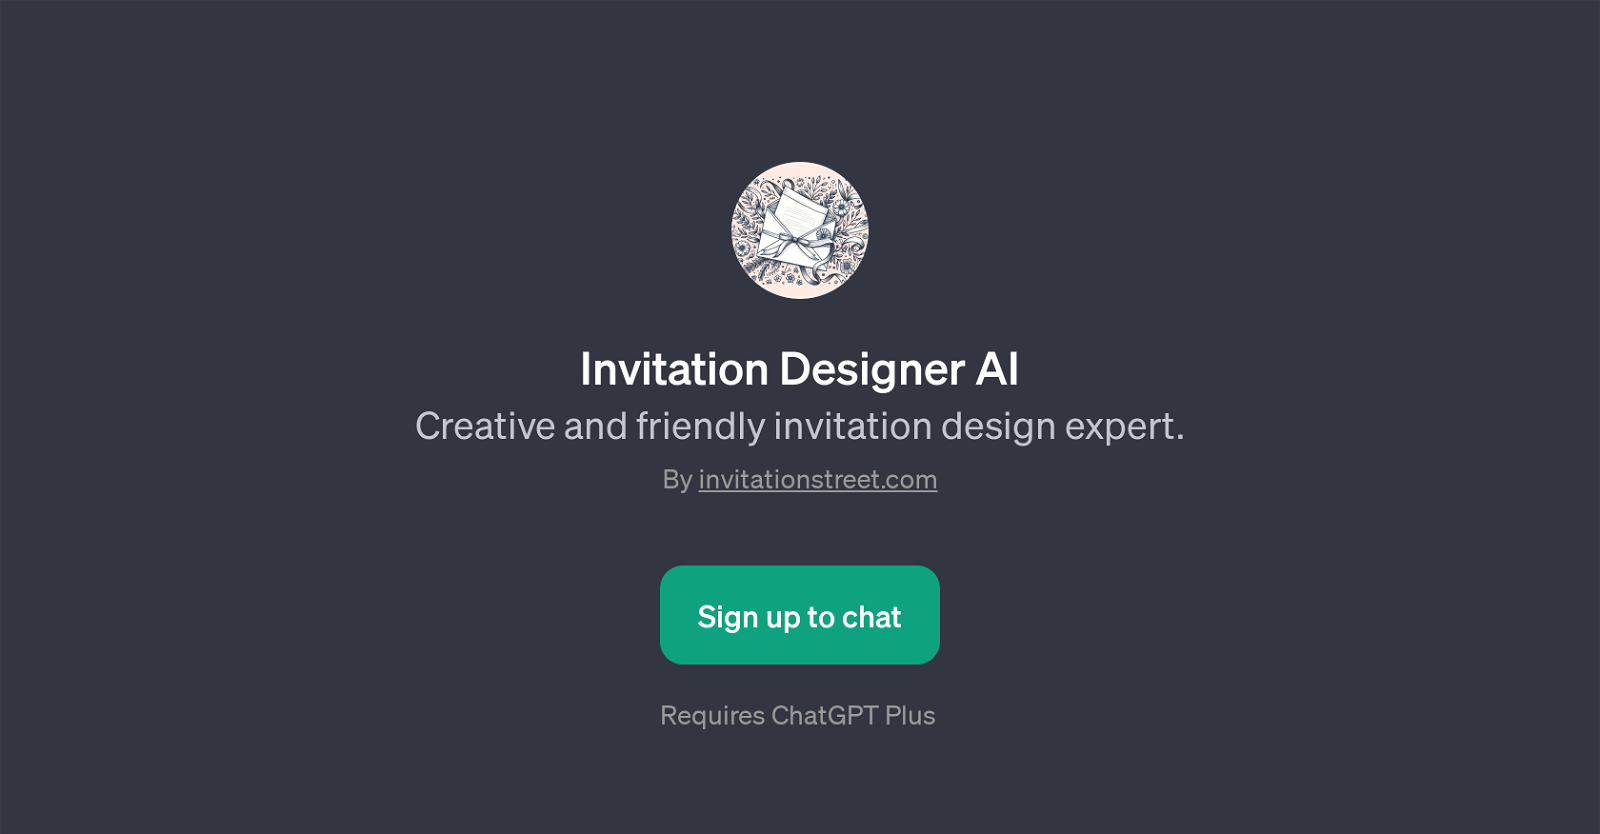 Invitation Designer AI website